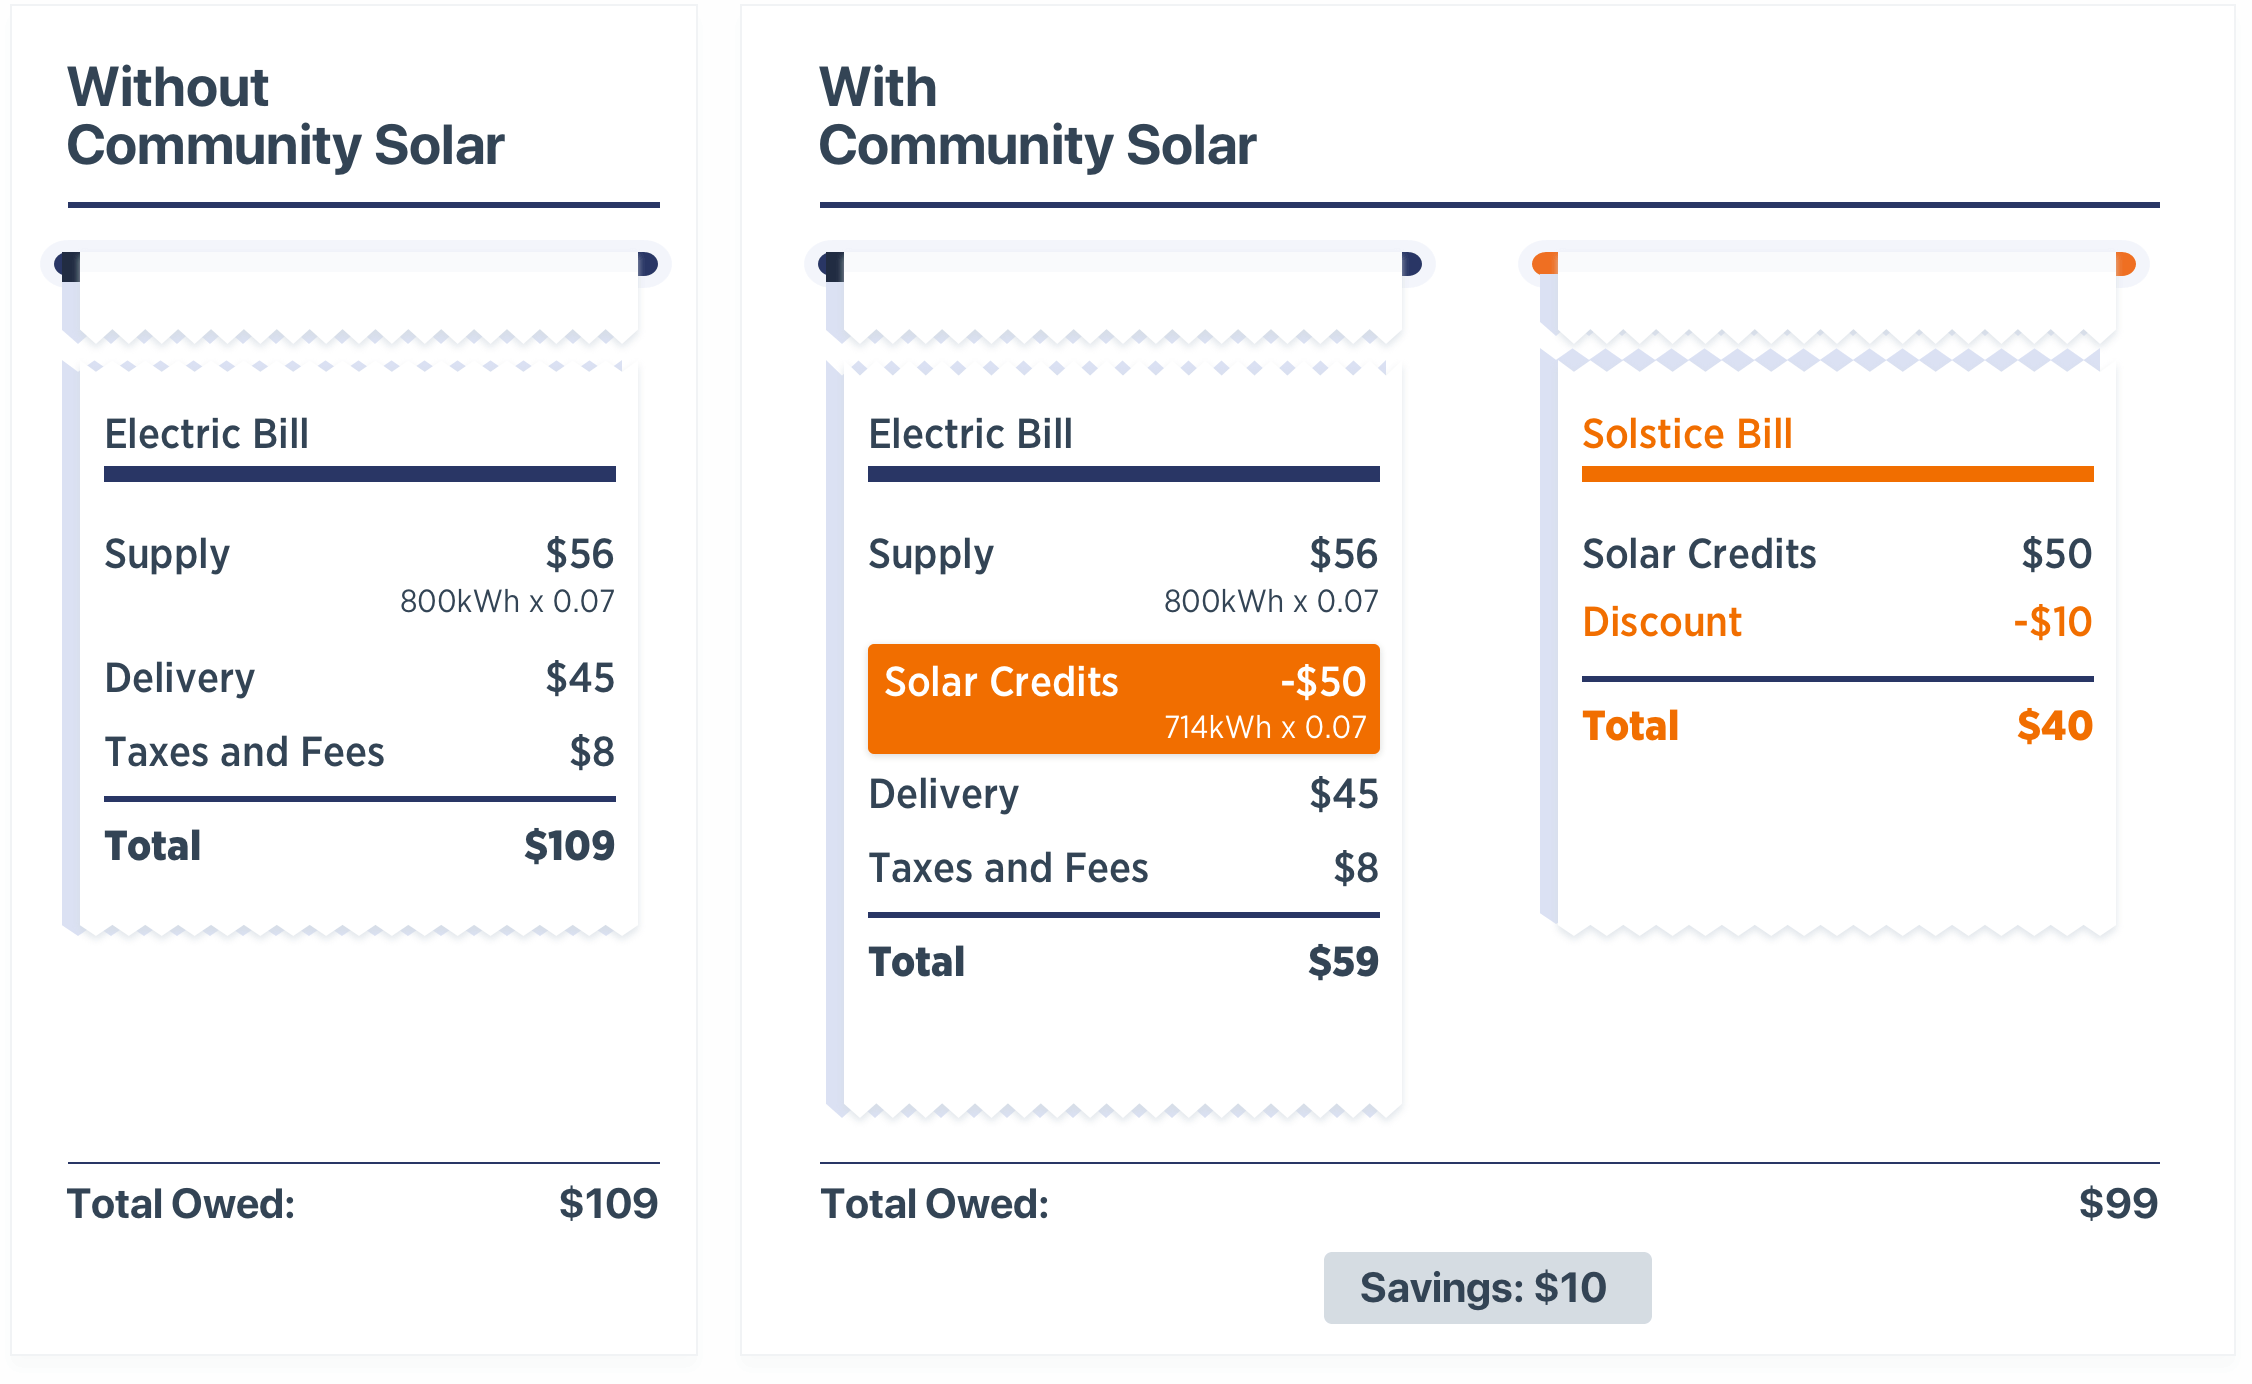 Solstice Solar Bill